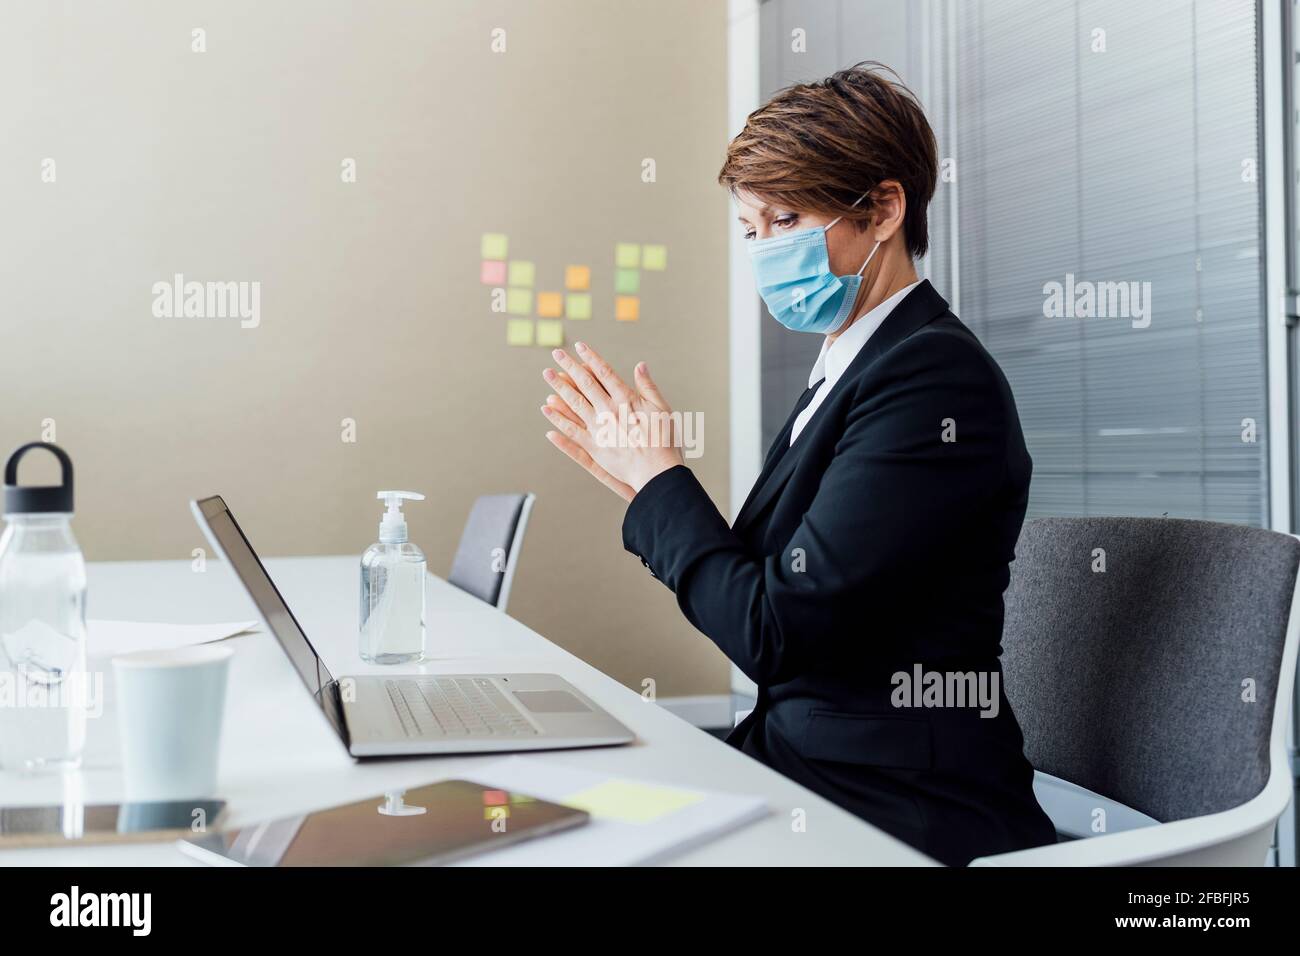 Femme professionnelle avec masque facial de protection frottant les mains pendant l'utilisation assainisseur au bureau dans le bureau Banque D'Images